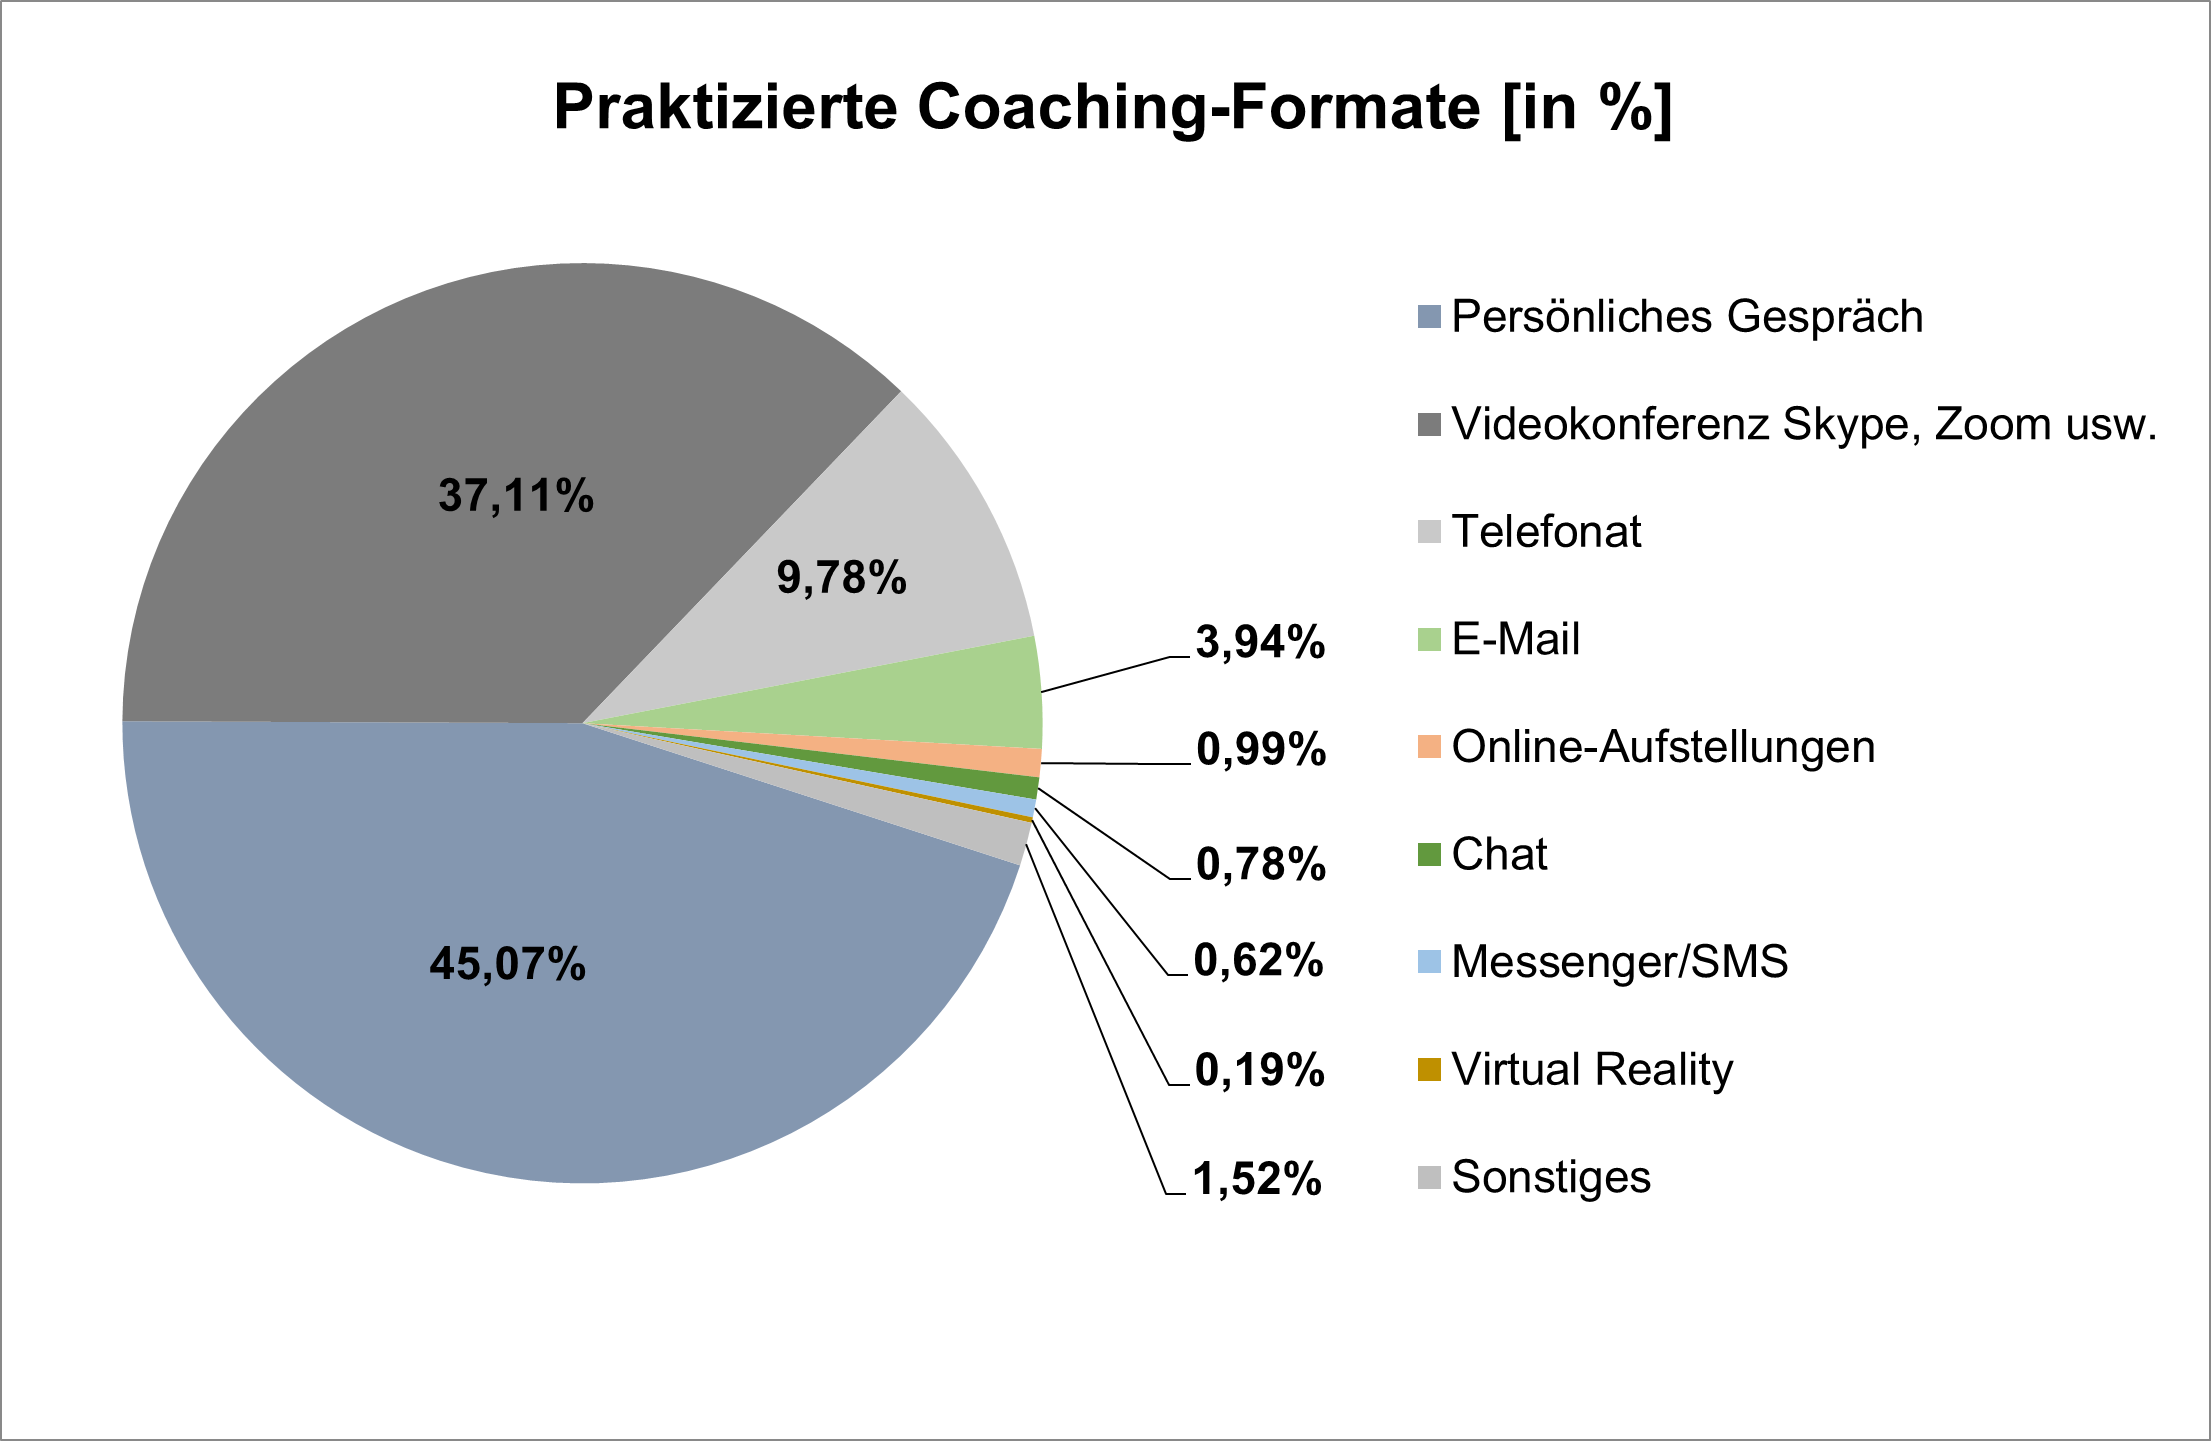 Verteilung der praktizierten Coaching-Formate